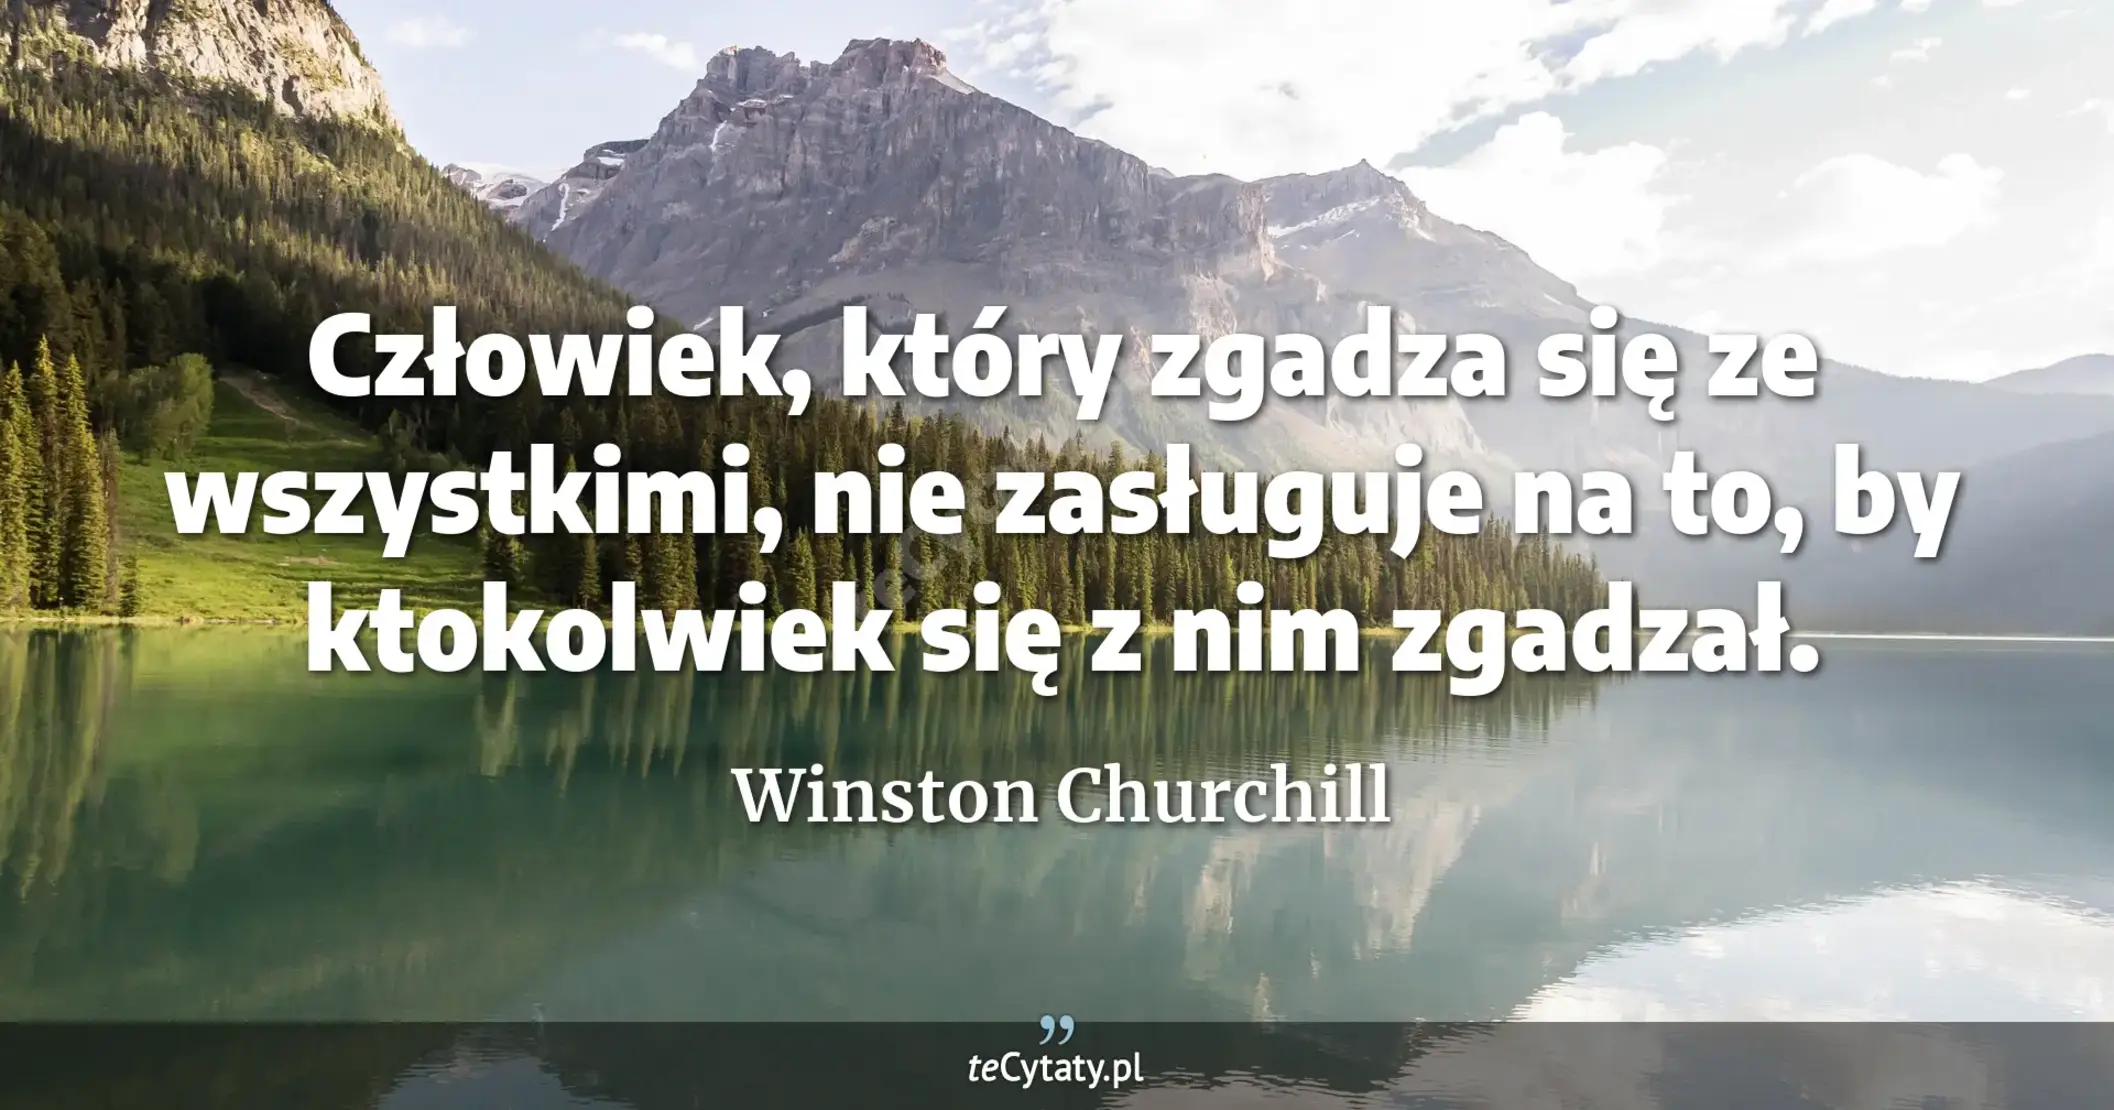 Człowiek, który zgadza się ze wszystkimi, nie zasługuje na to, by ktokolwiek się z nim zgadzał. - Winston Churchill